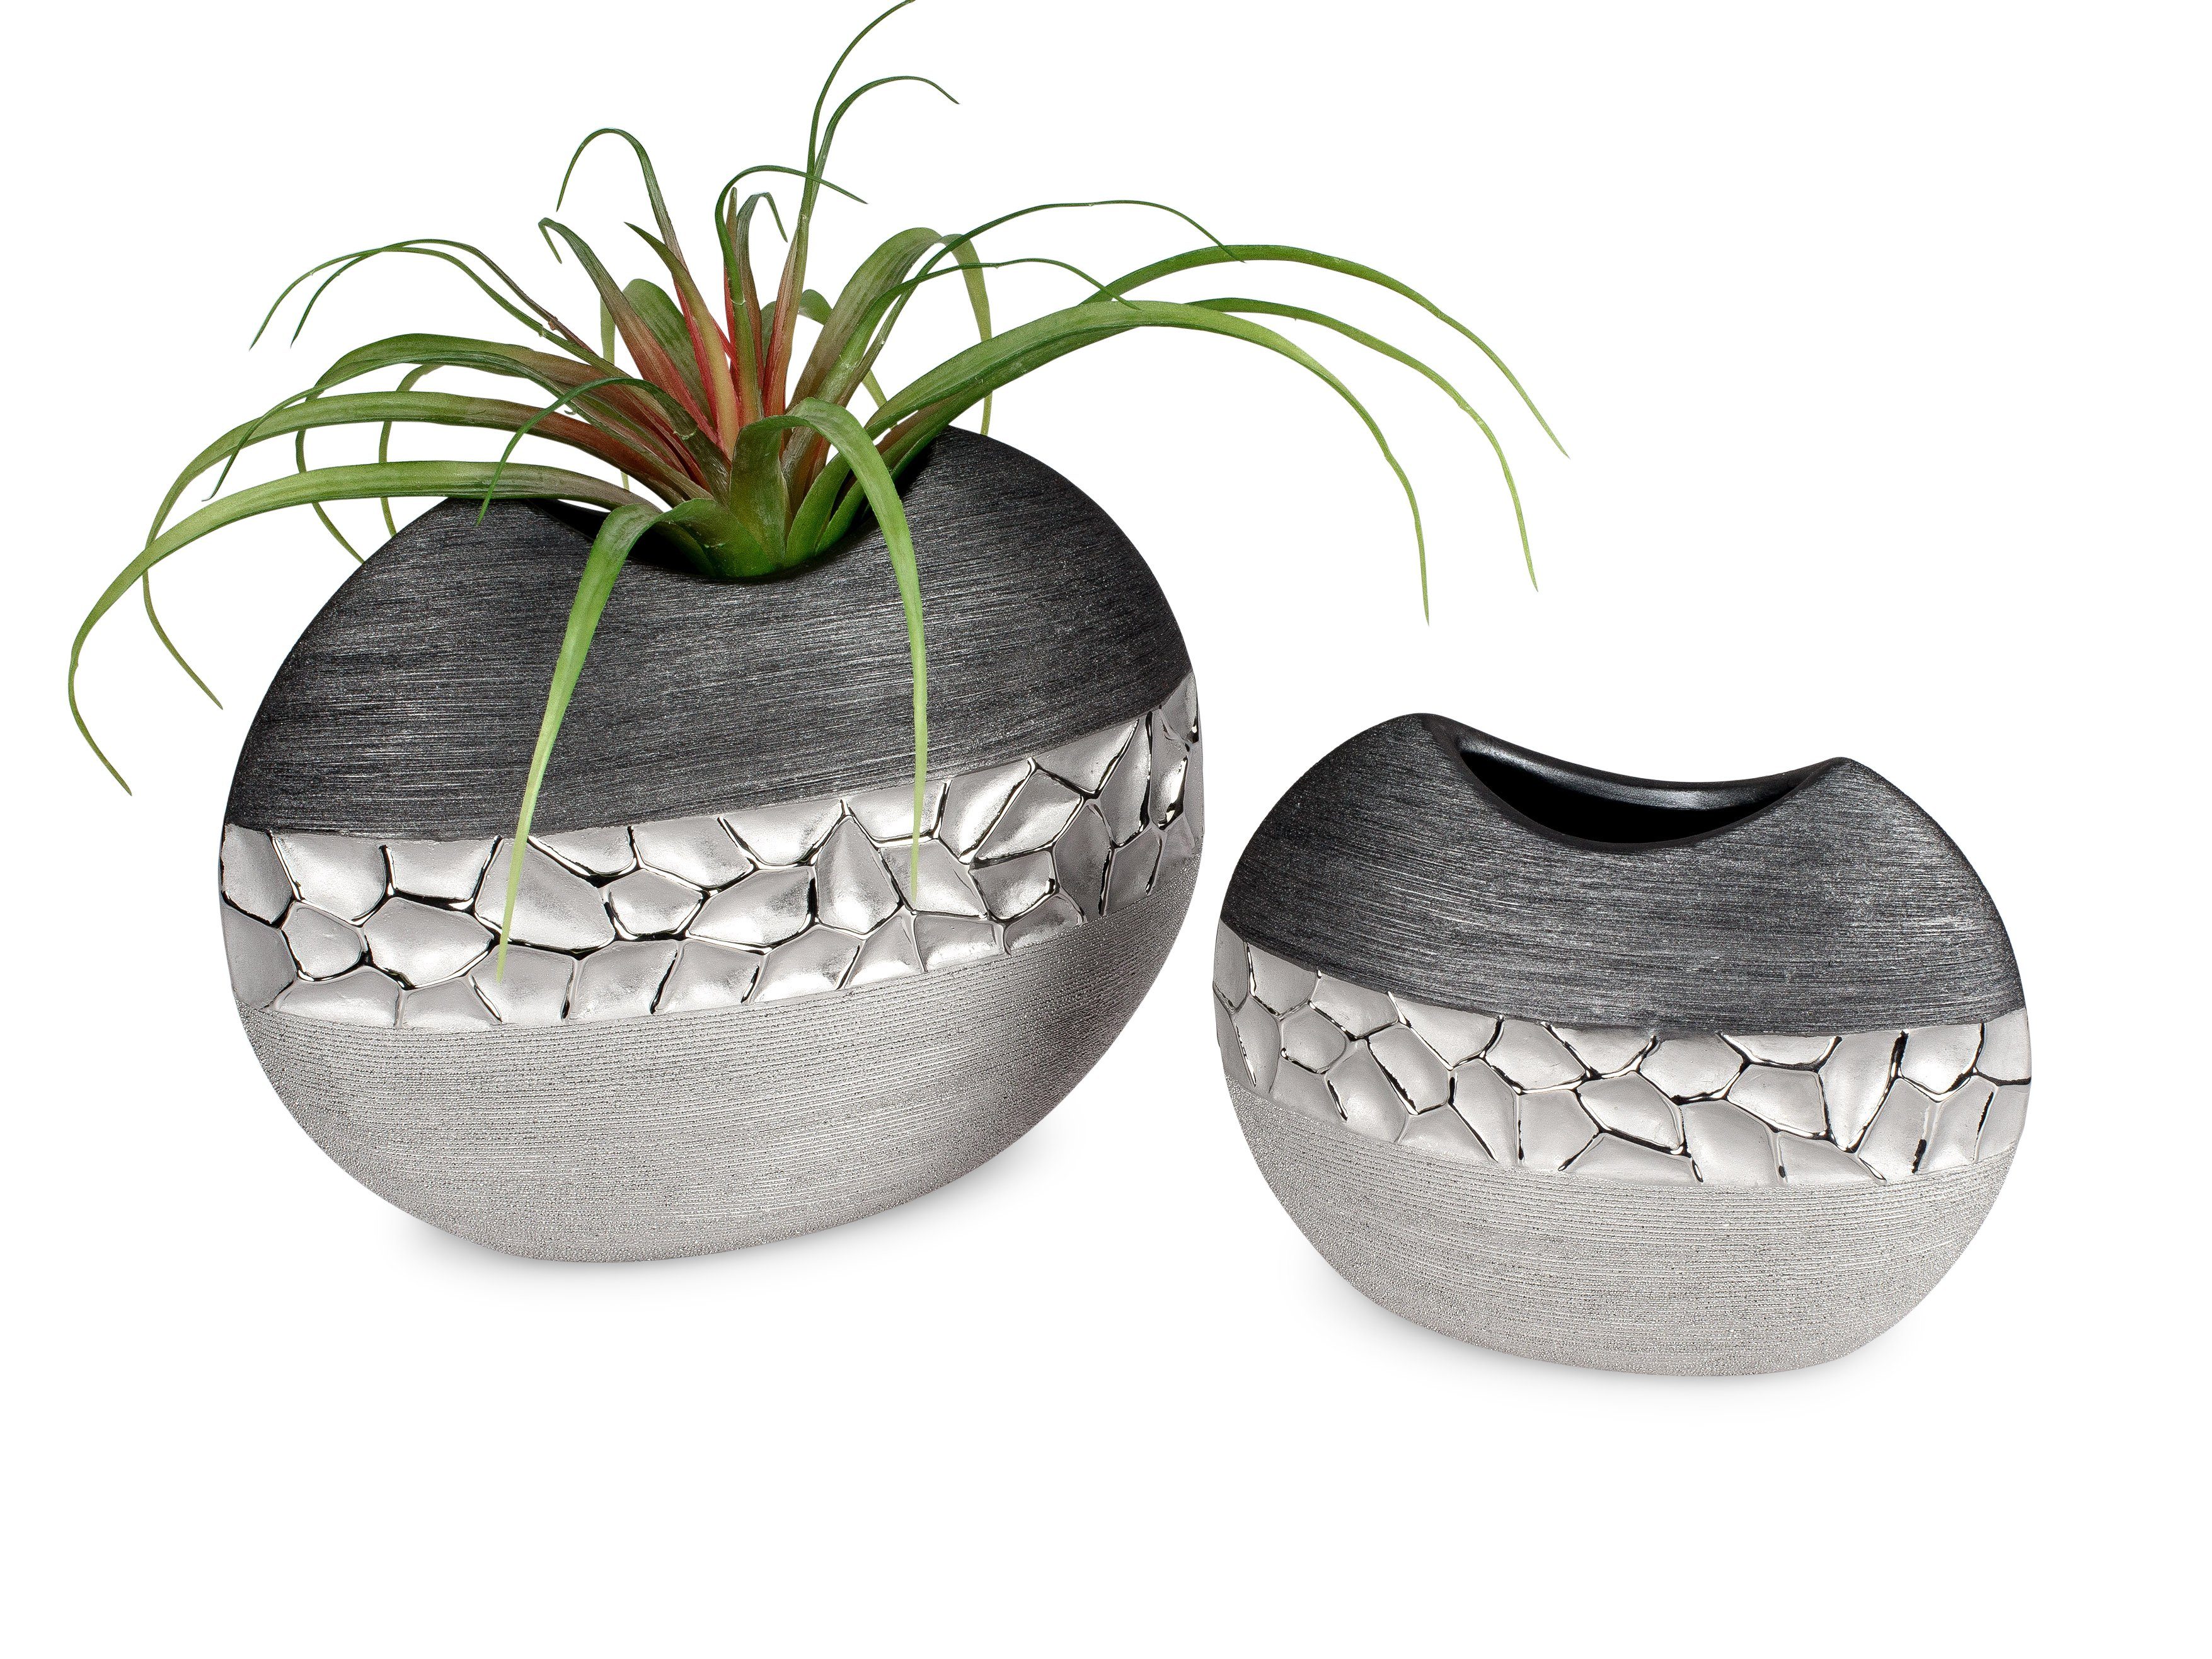 Small-Preis Dekovase Vase Tischvase silber grau in 2 Größen wählbar, aus Keramik